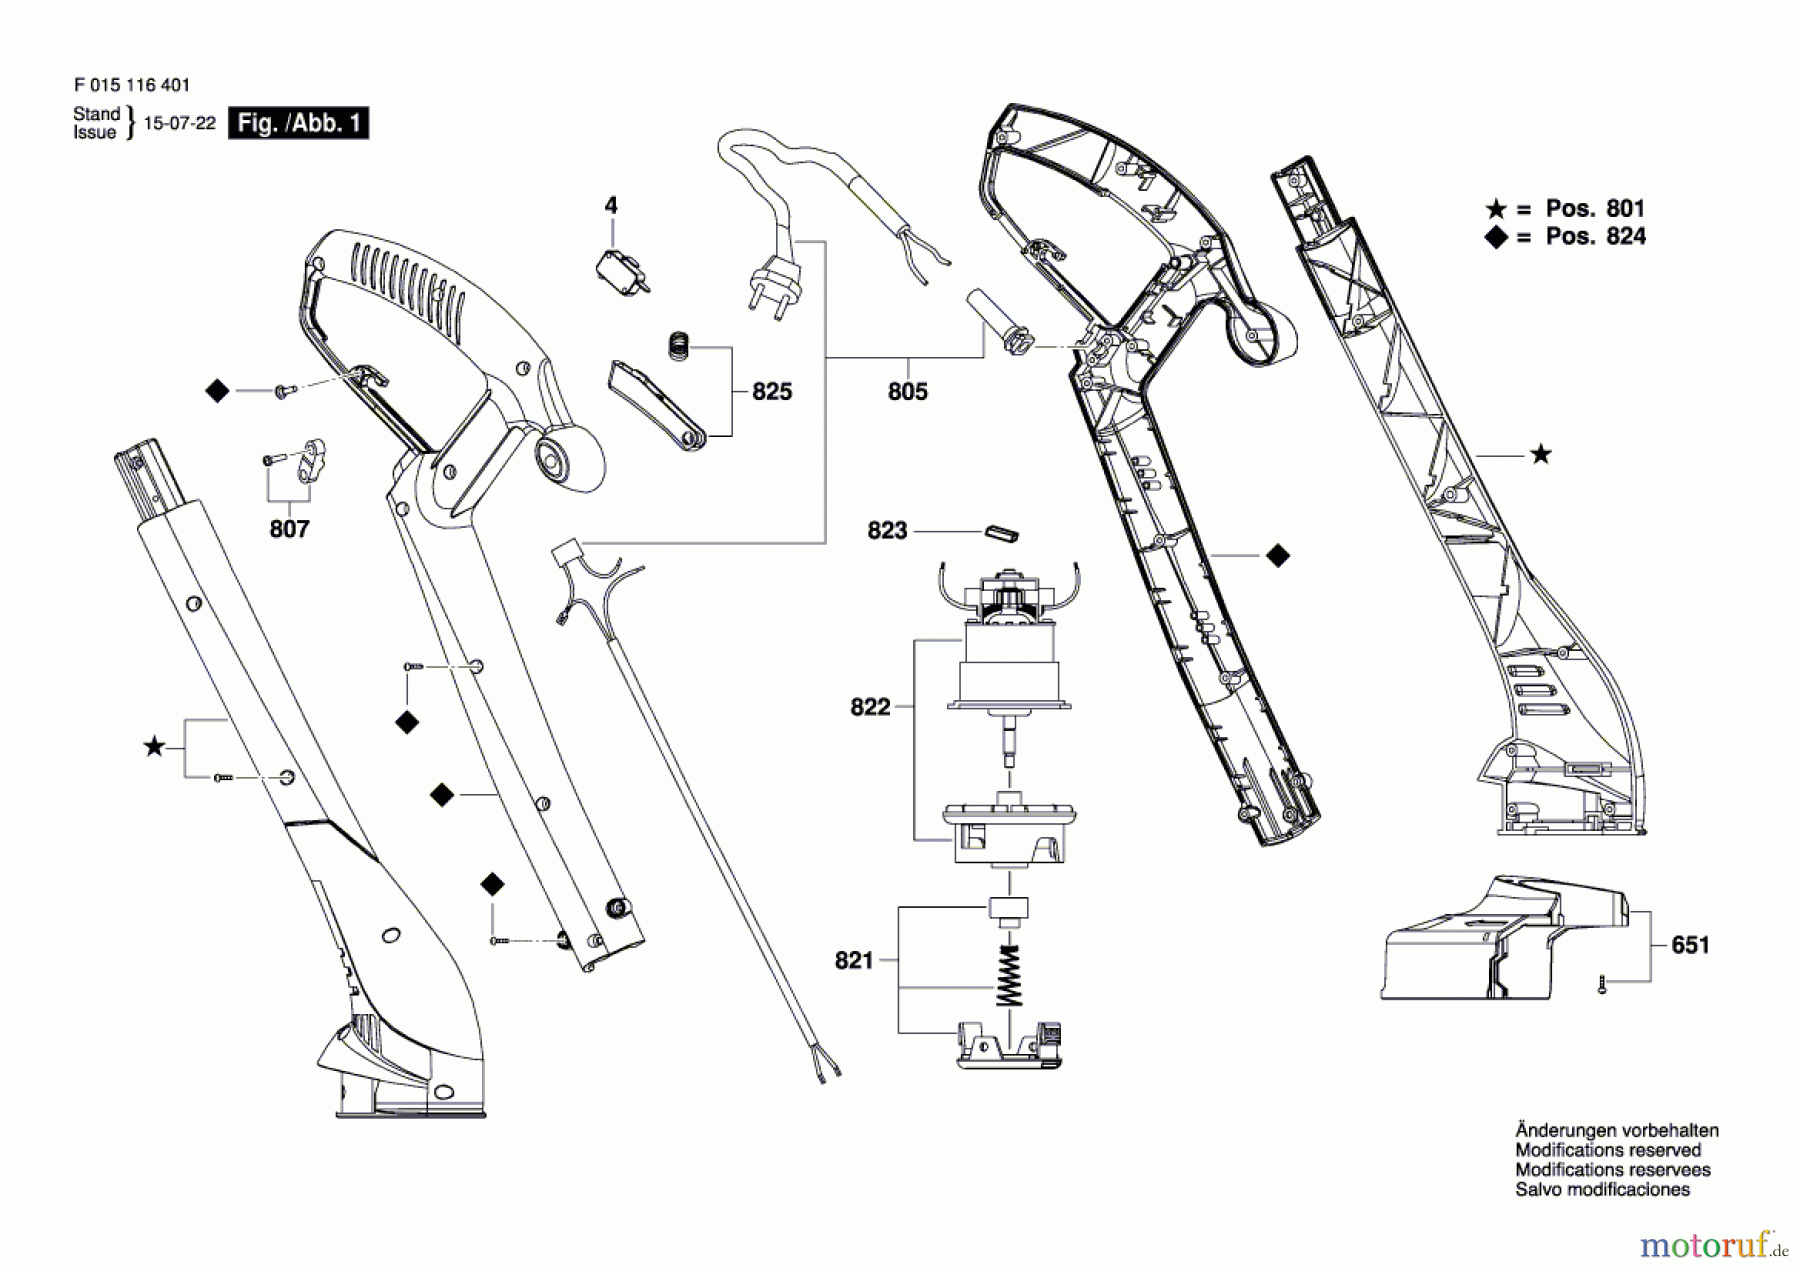  Bosch Werkzeug Werkzeugsatz 1164 Seite 1